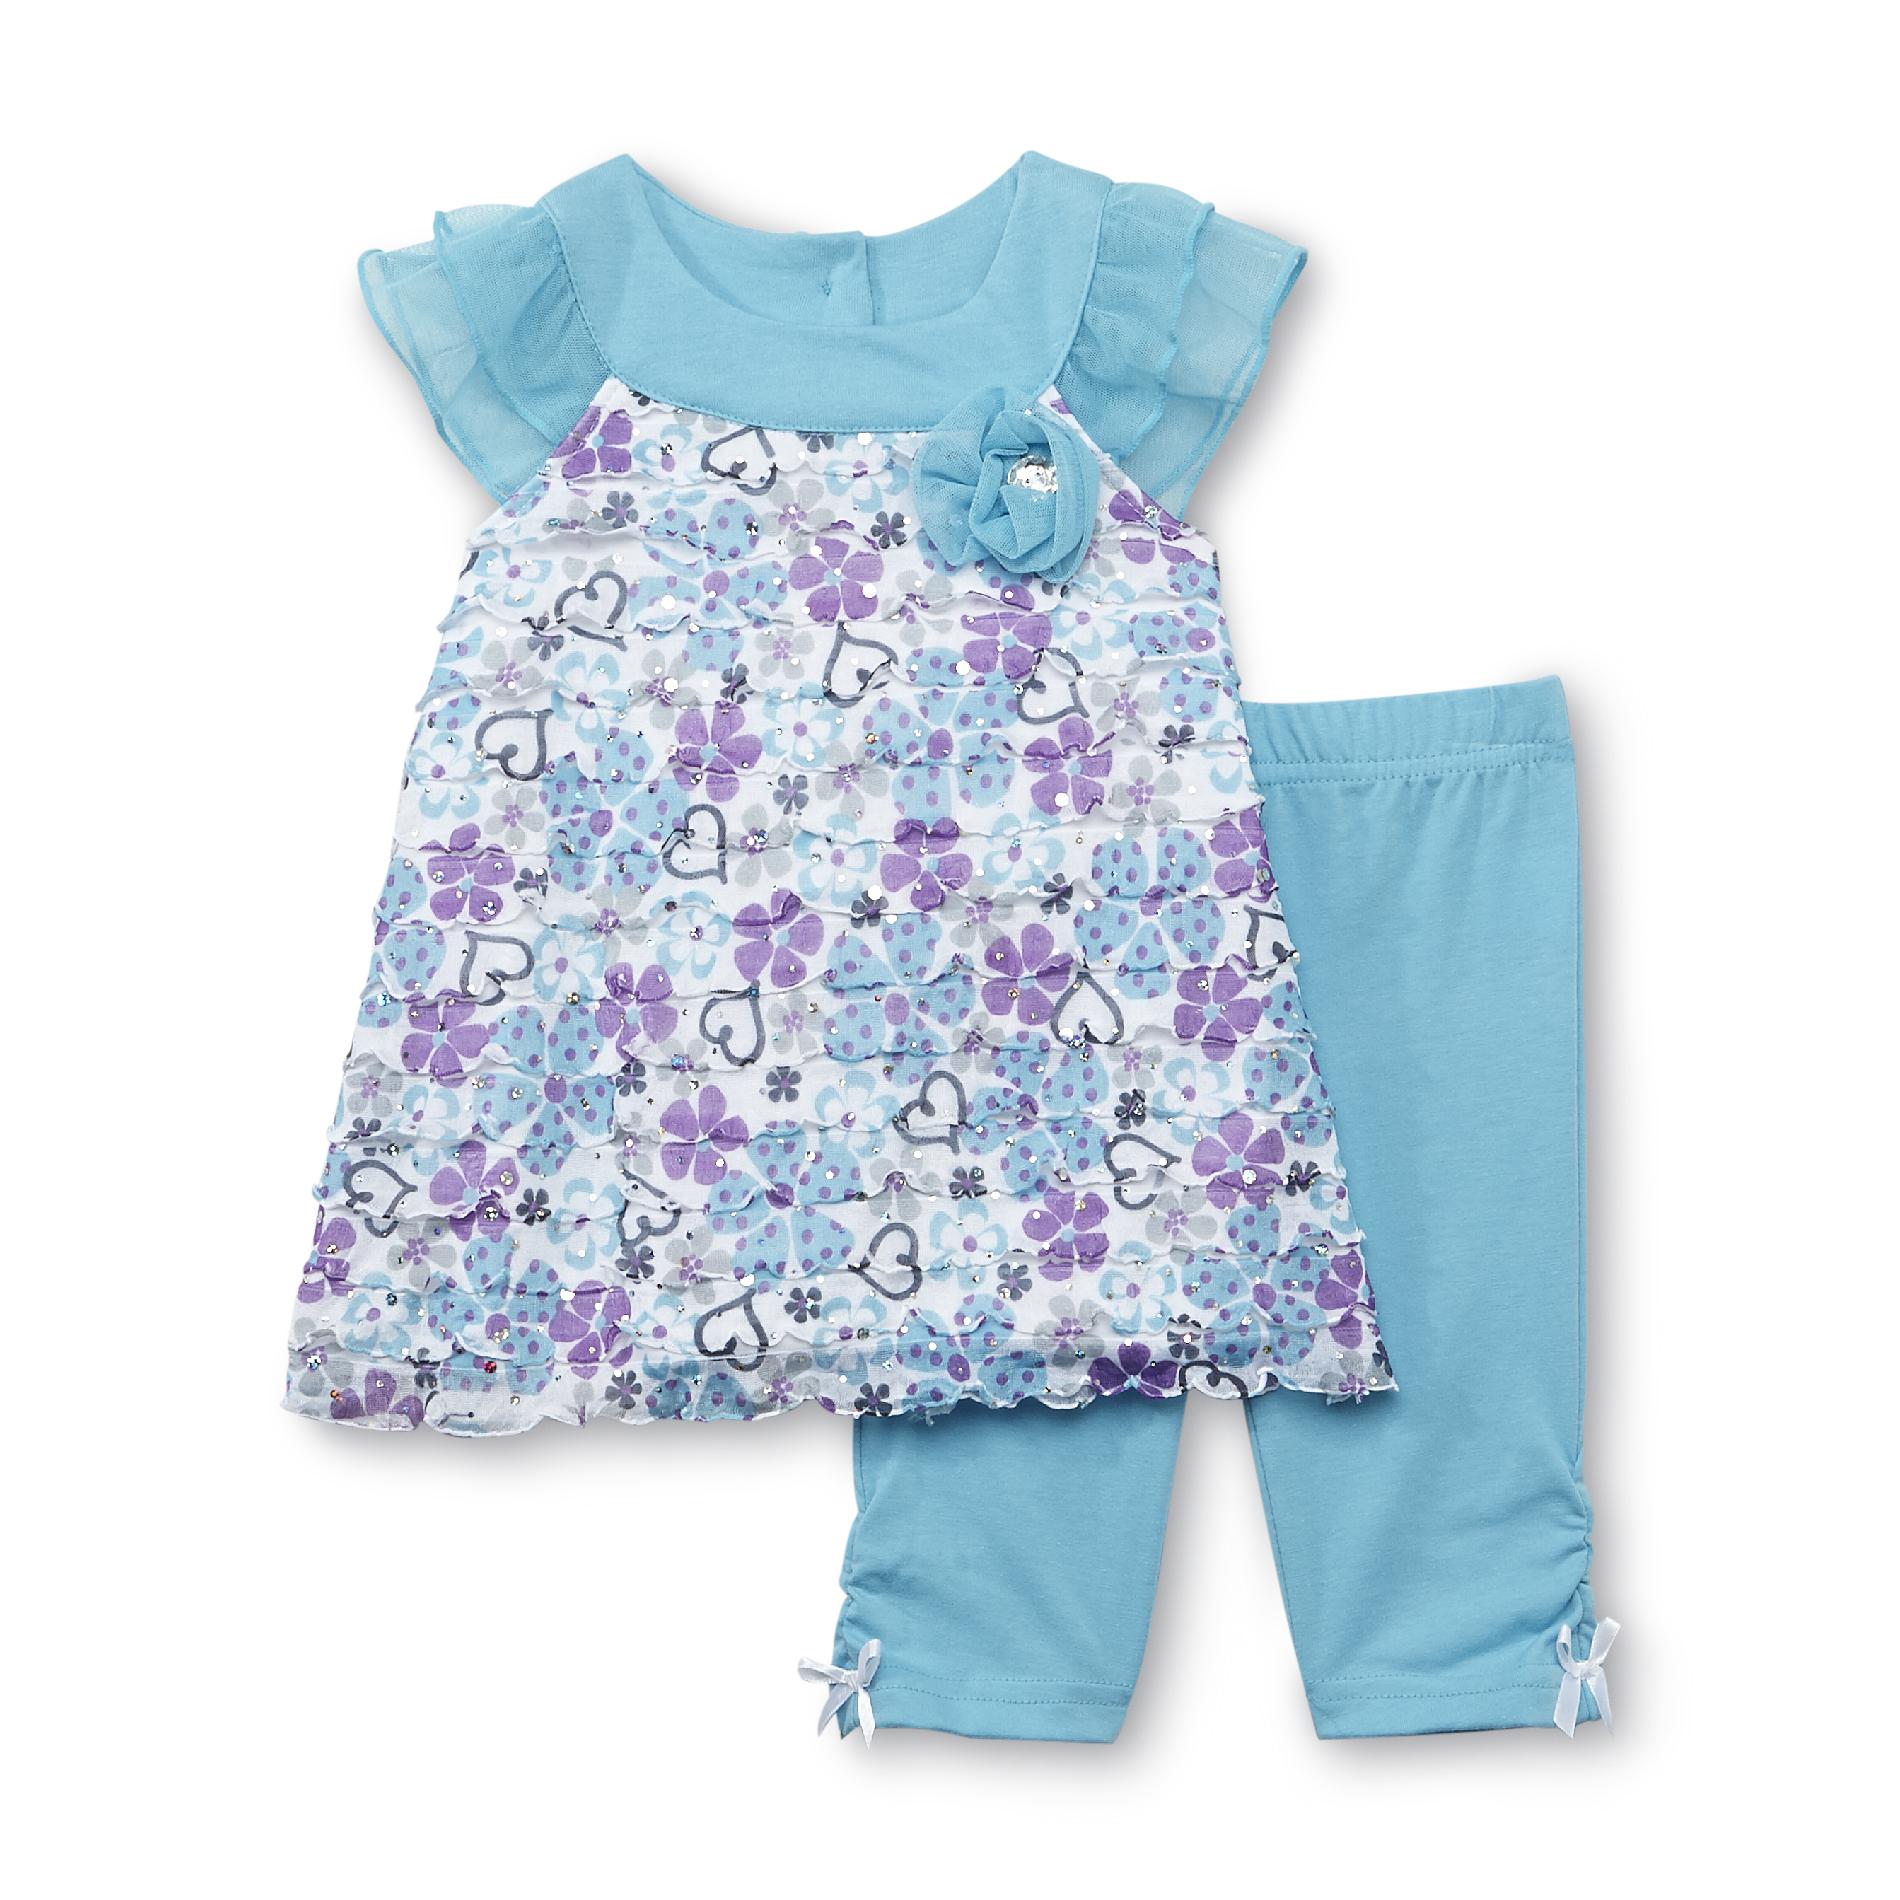 Little Lass Infant & Toddler Girl's Tunic & Leggings - Heart & Floral